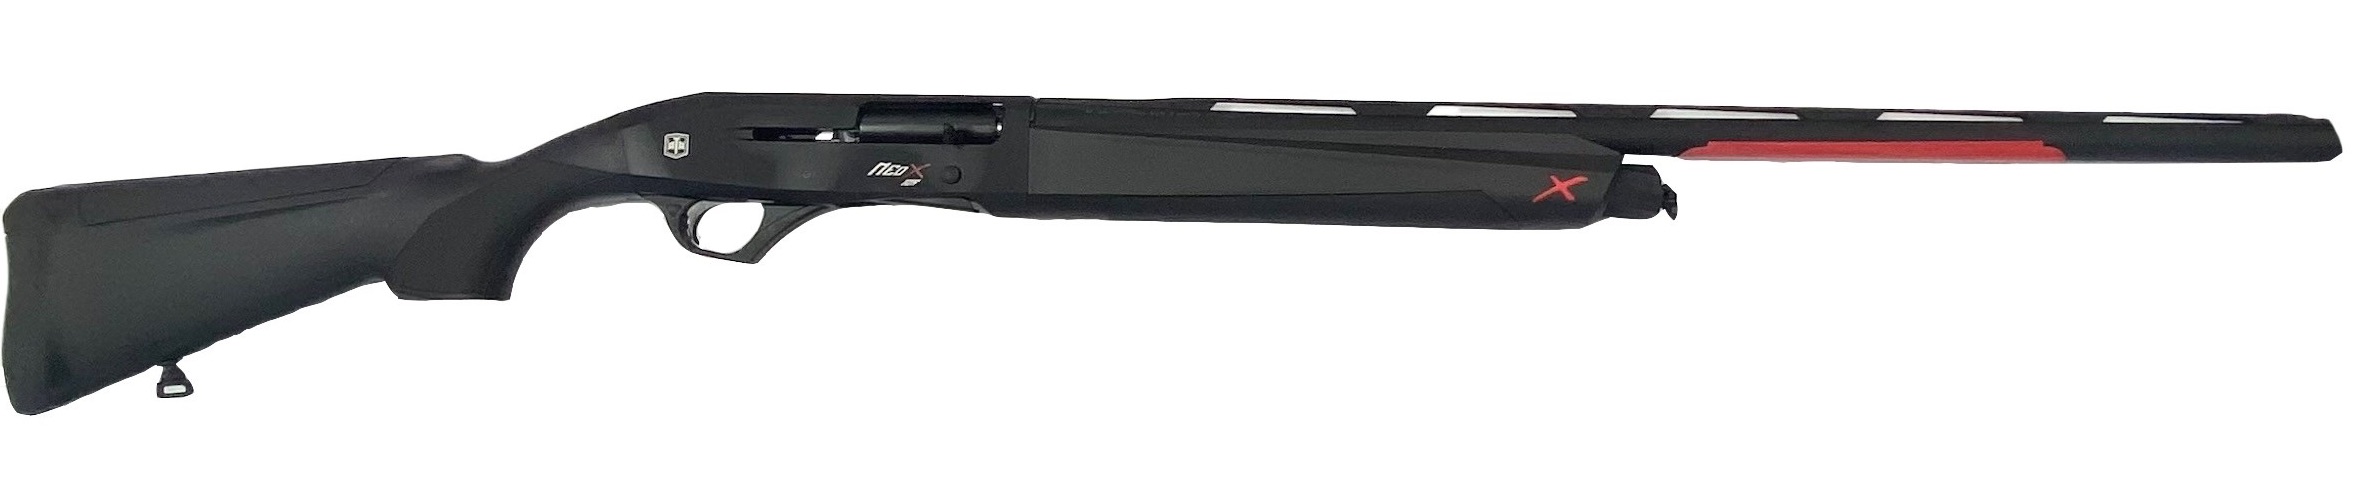 Гладкоствольное ружье ATA ARMS Moд. NEO X SYNTHETIC BLACK (полуавтоматическое)